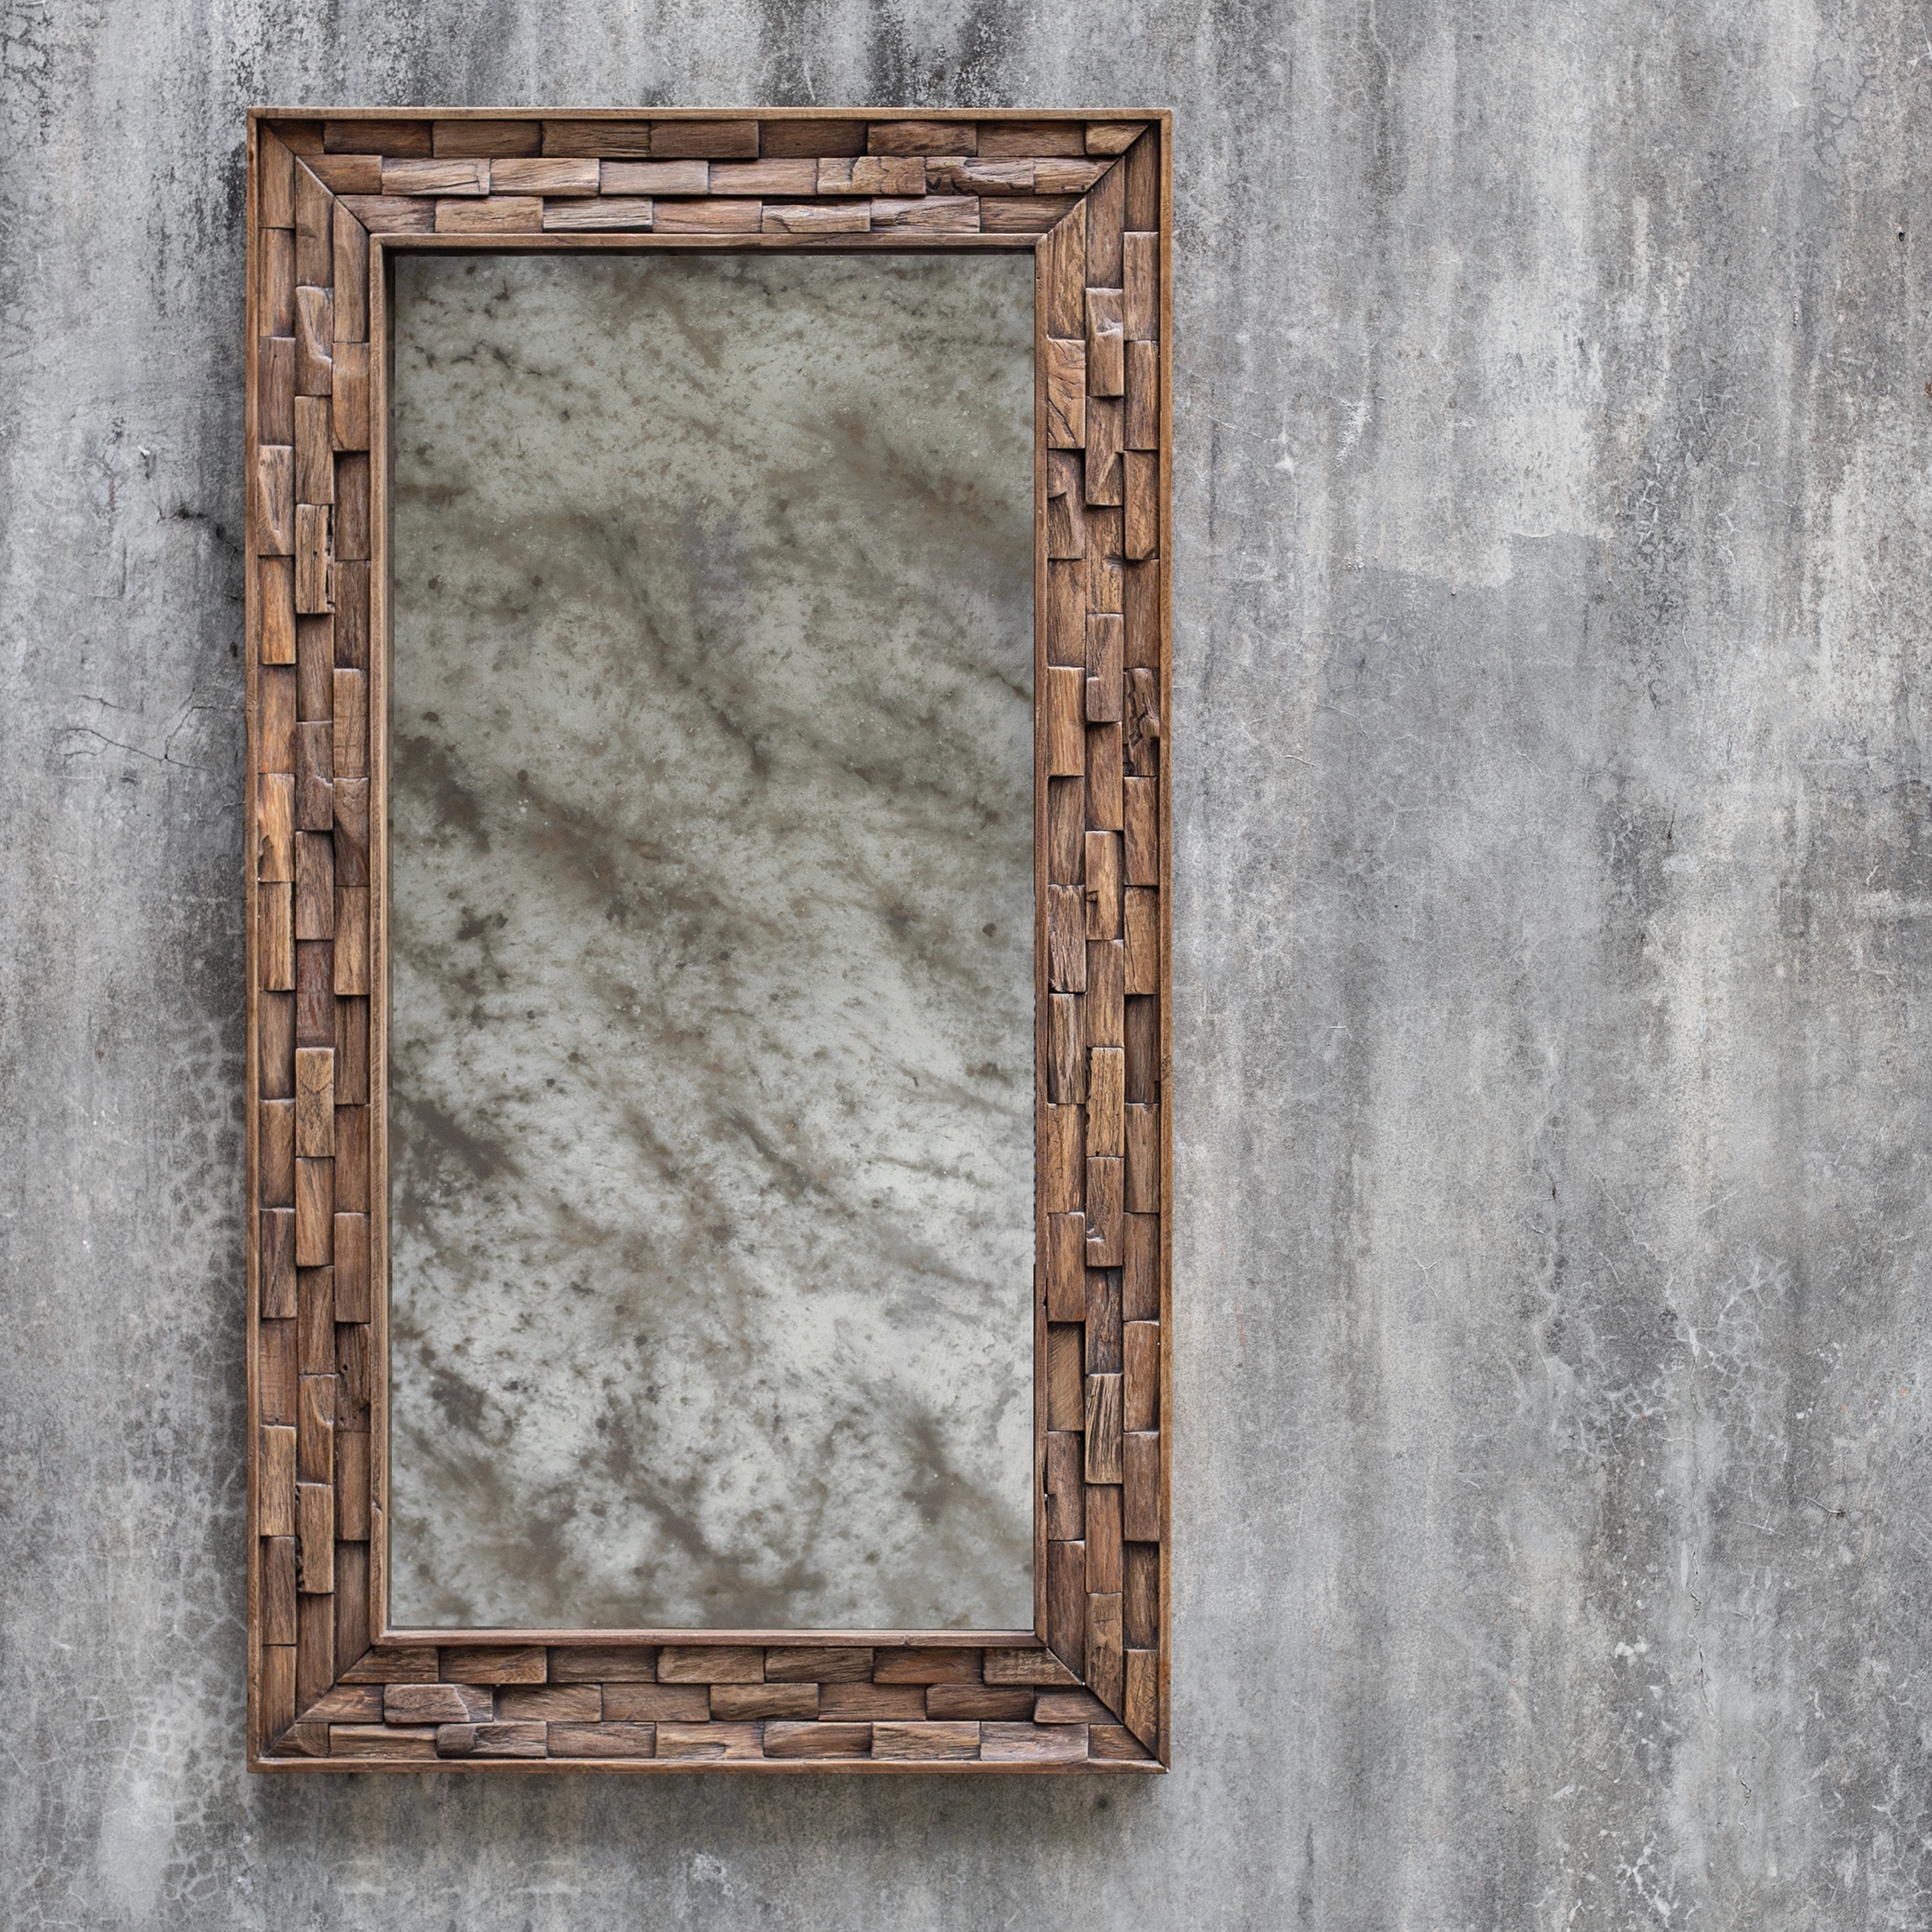 Damon Mosaic Wood Mirror - Image 0